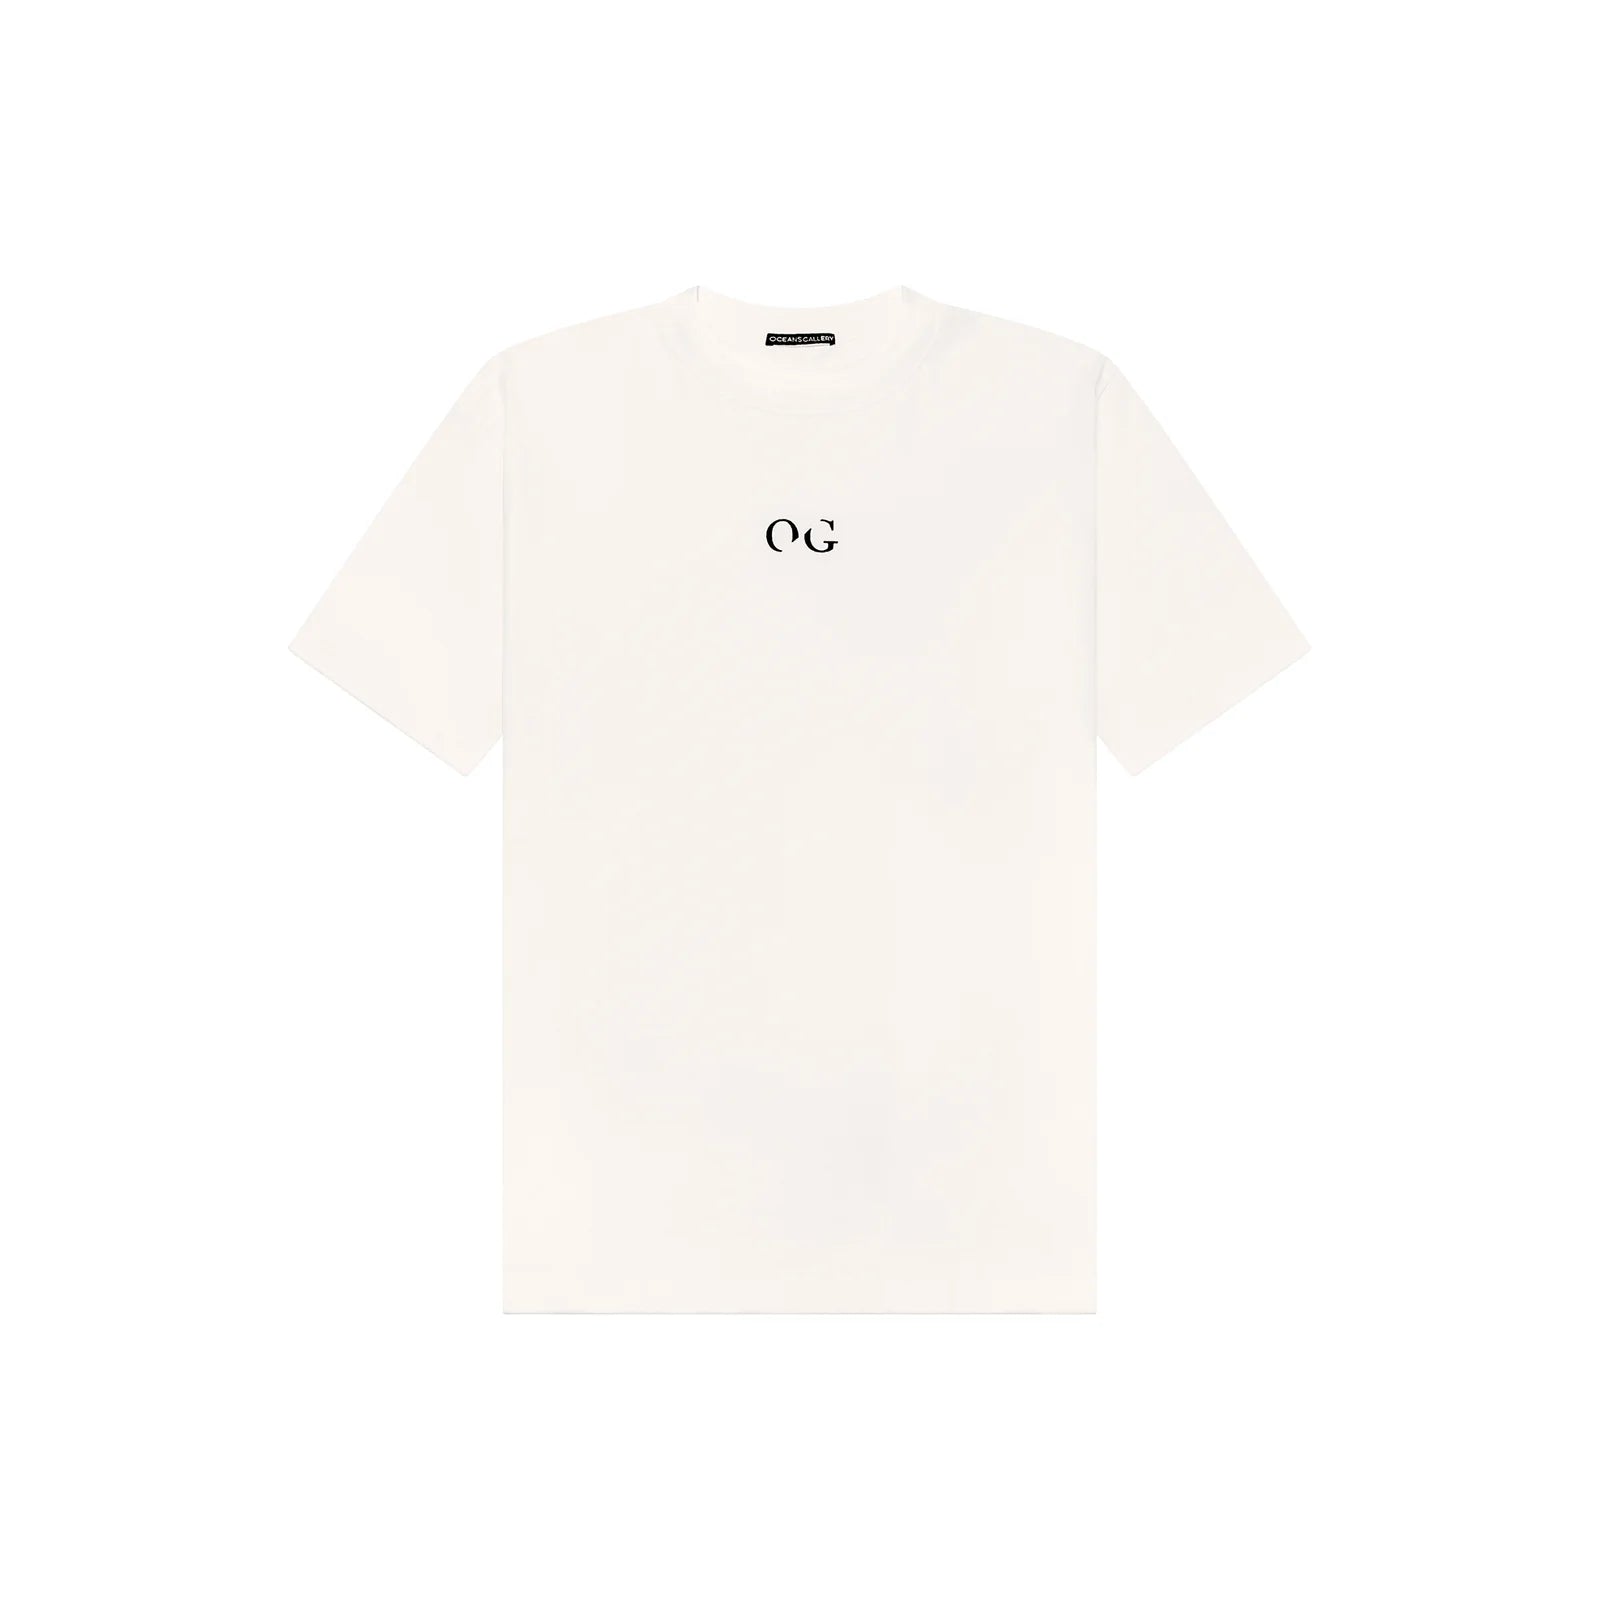 Ocean's Gallery Classic Og T-Shirt White